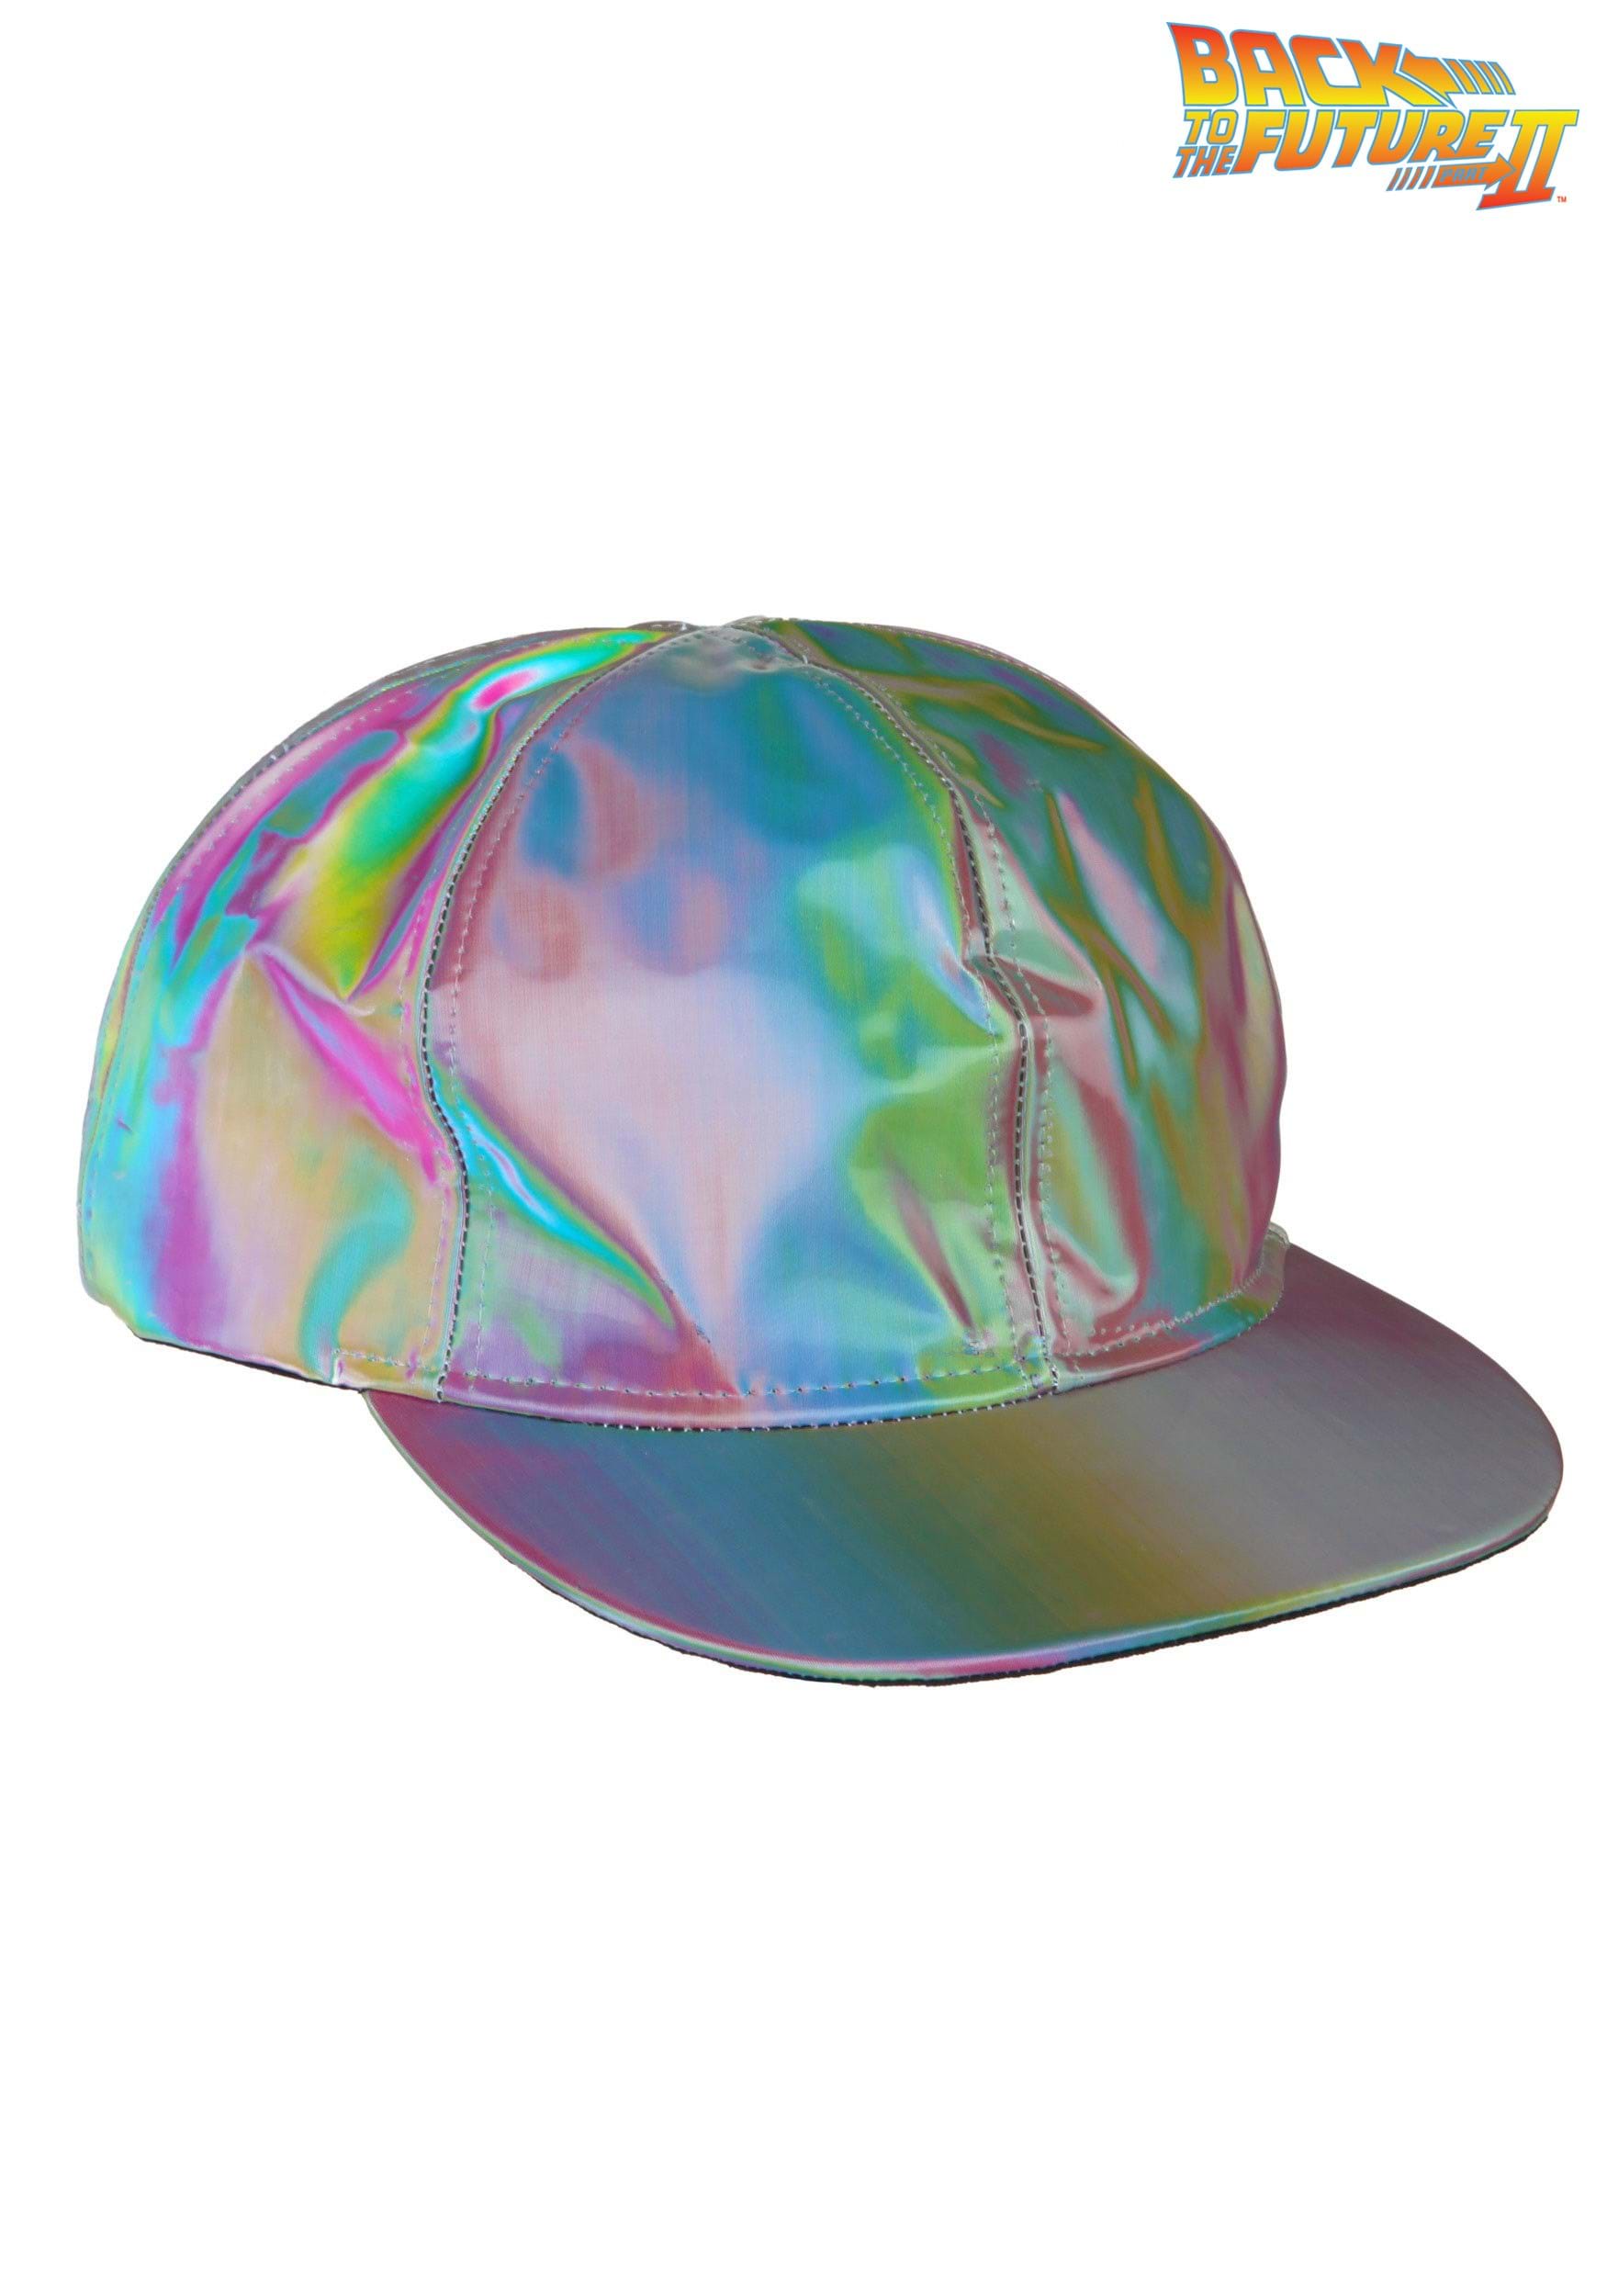 2015 Marty McFly Hat - Afbeelding 1 van 1